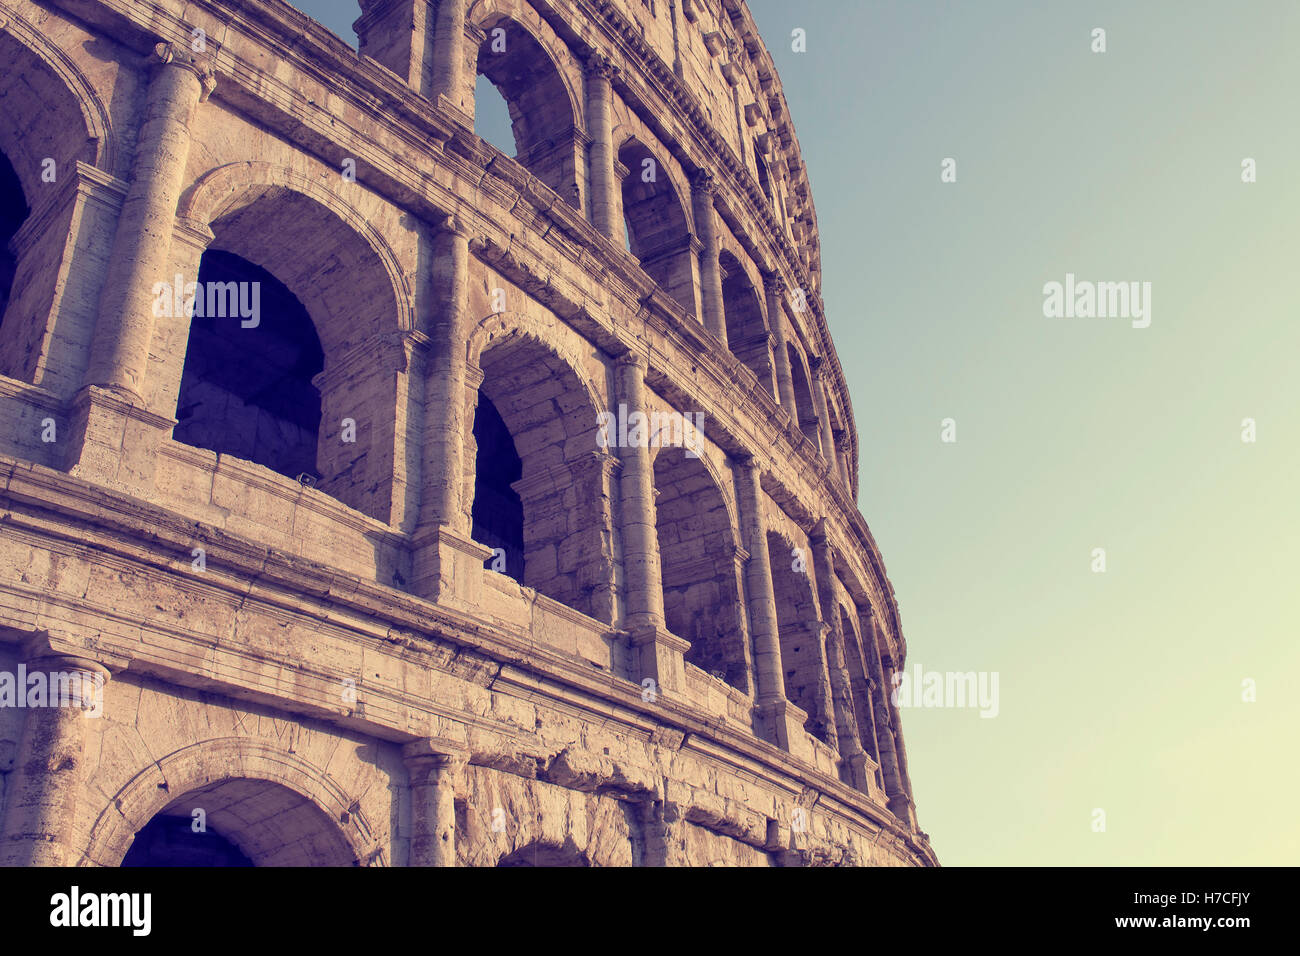 Ansicht des Kolosseums in Rom. Monumentale 3-stufige römische Amphitheater einst für Gladiatorenspiele. Getönten Bild mit Farbe effe Stockfoto